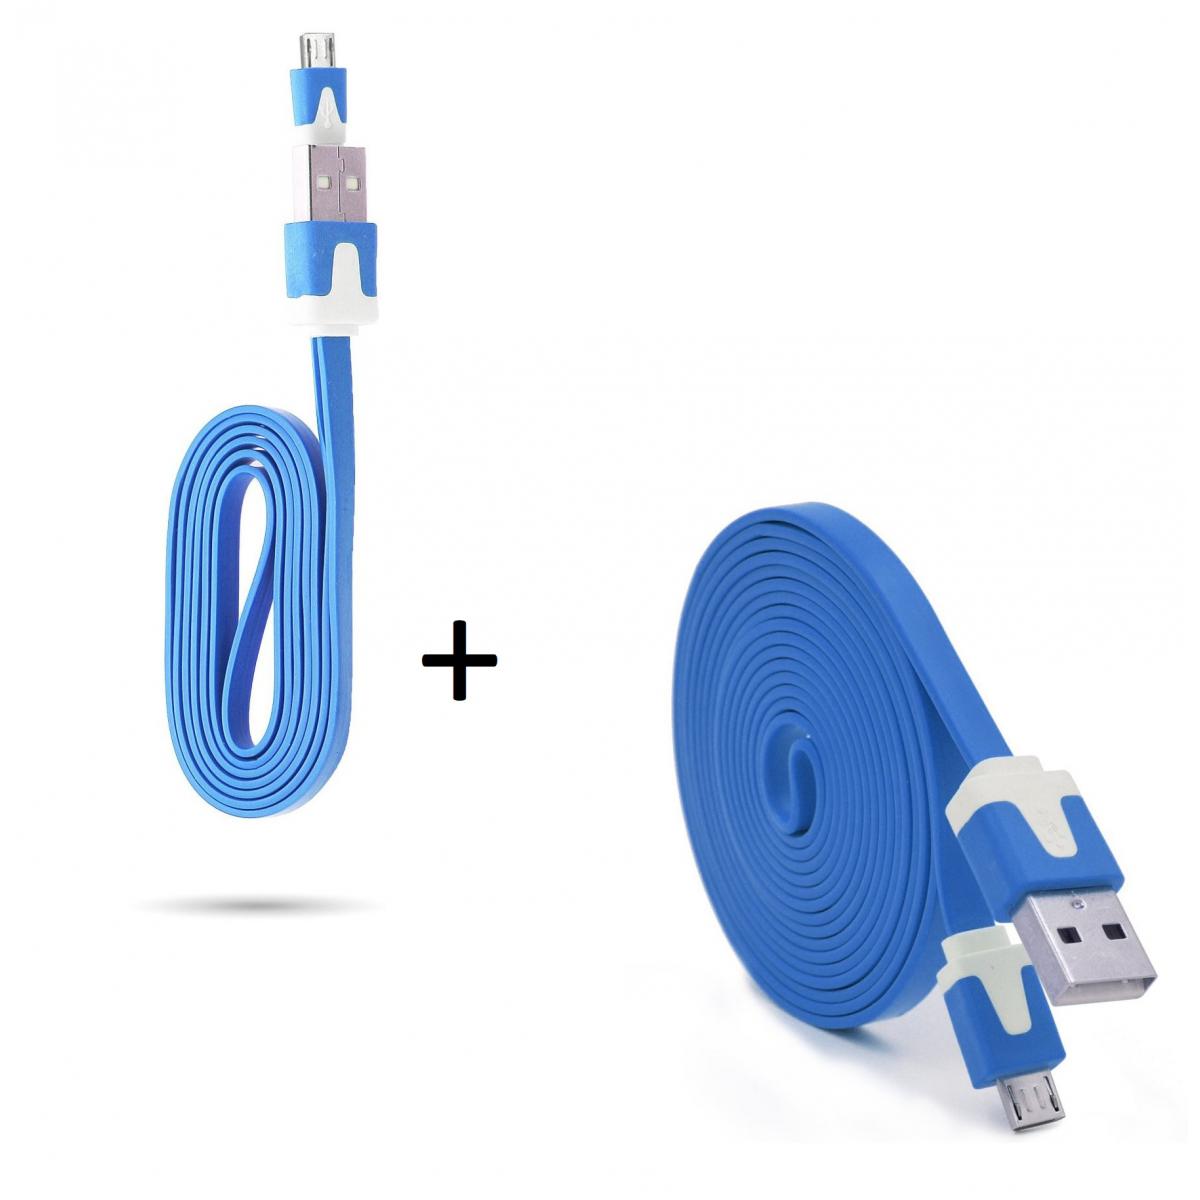 Shot - Pack Chargeur pour JBL CLIP 3 Smartphone Micro USB (Cable Noodle 3m + Cable Noodle 1m) Android (BLEU) - Chargeur secteur téléphone